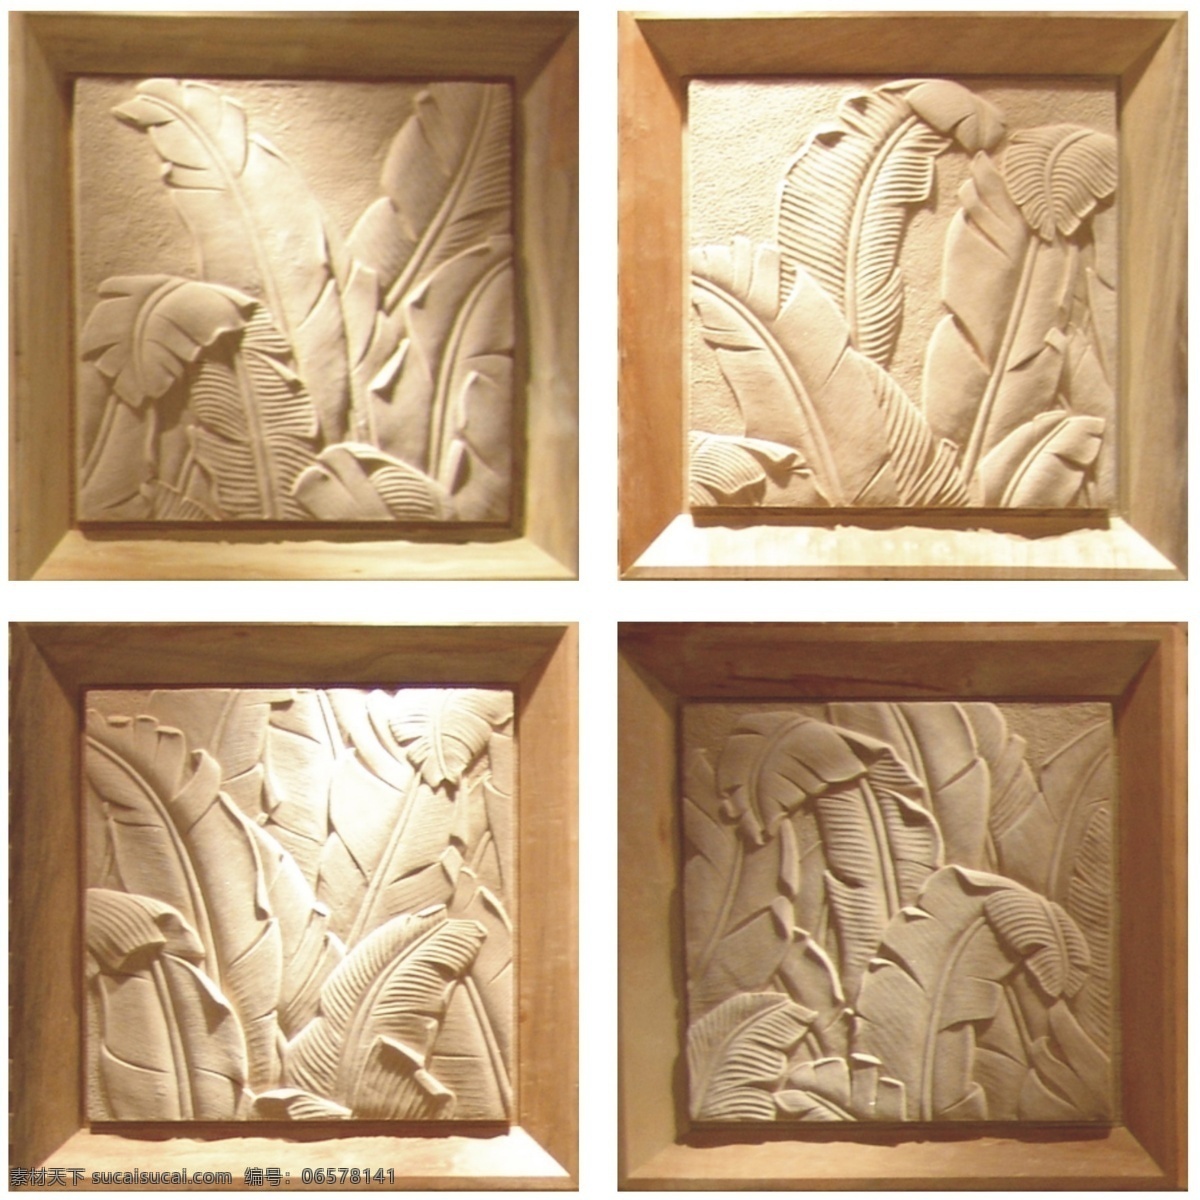 芭蕉叶 基典艺术 基典产品 壁饰系列 壁饰贴图 3d素材 贴图 艺术品 砂岩系列 3d设计